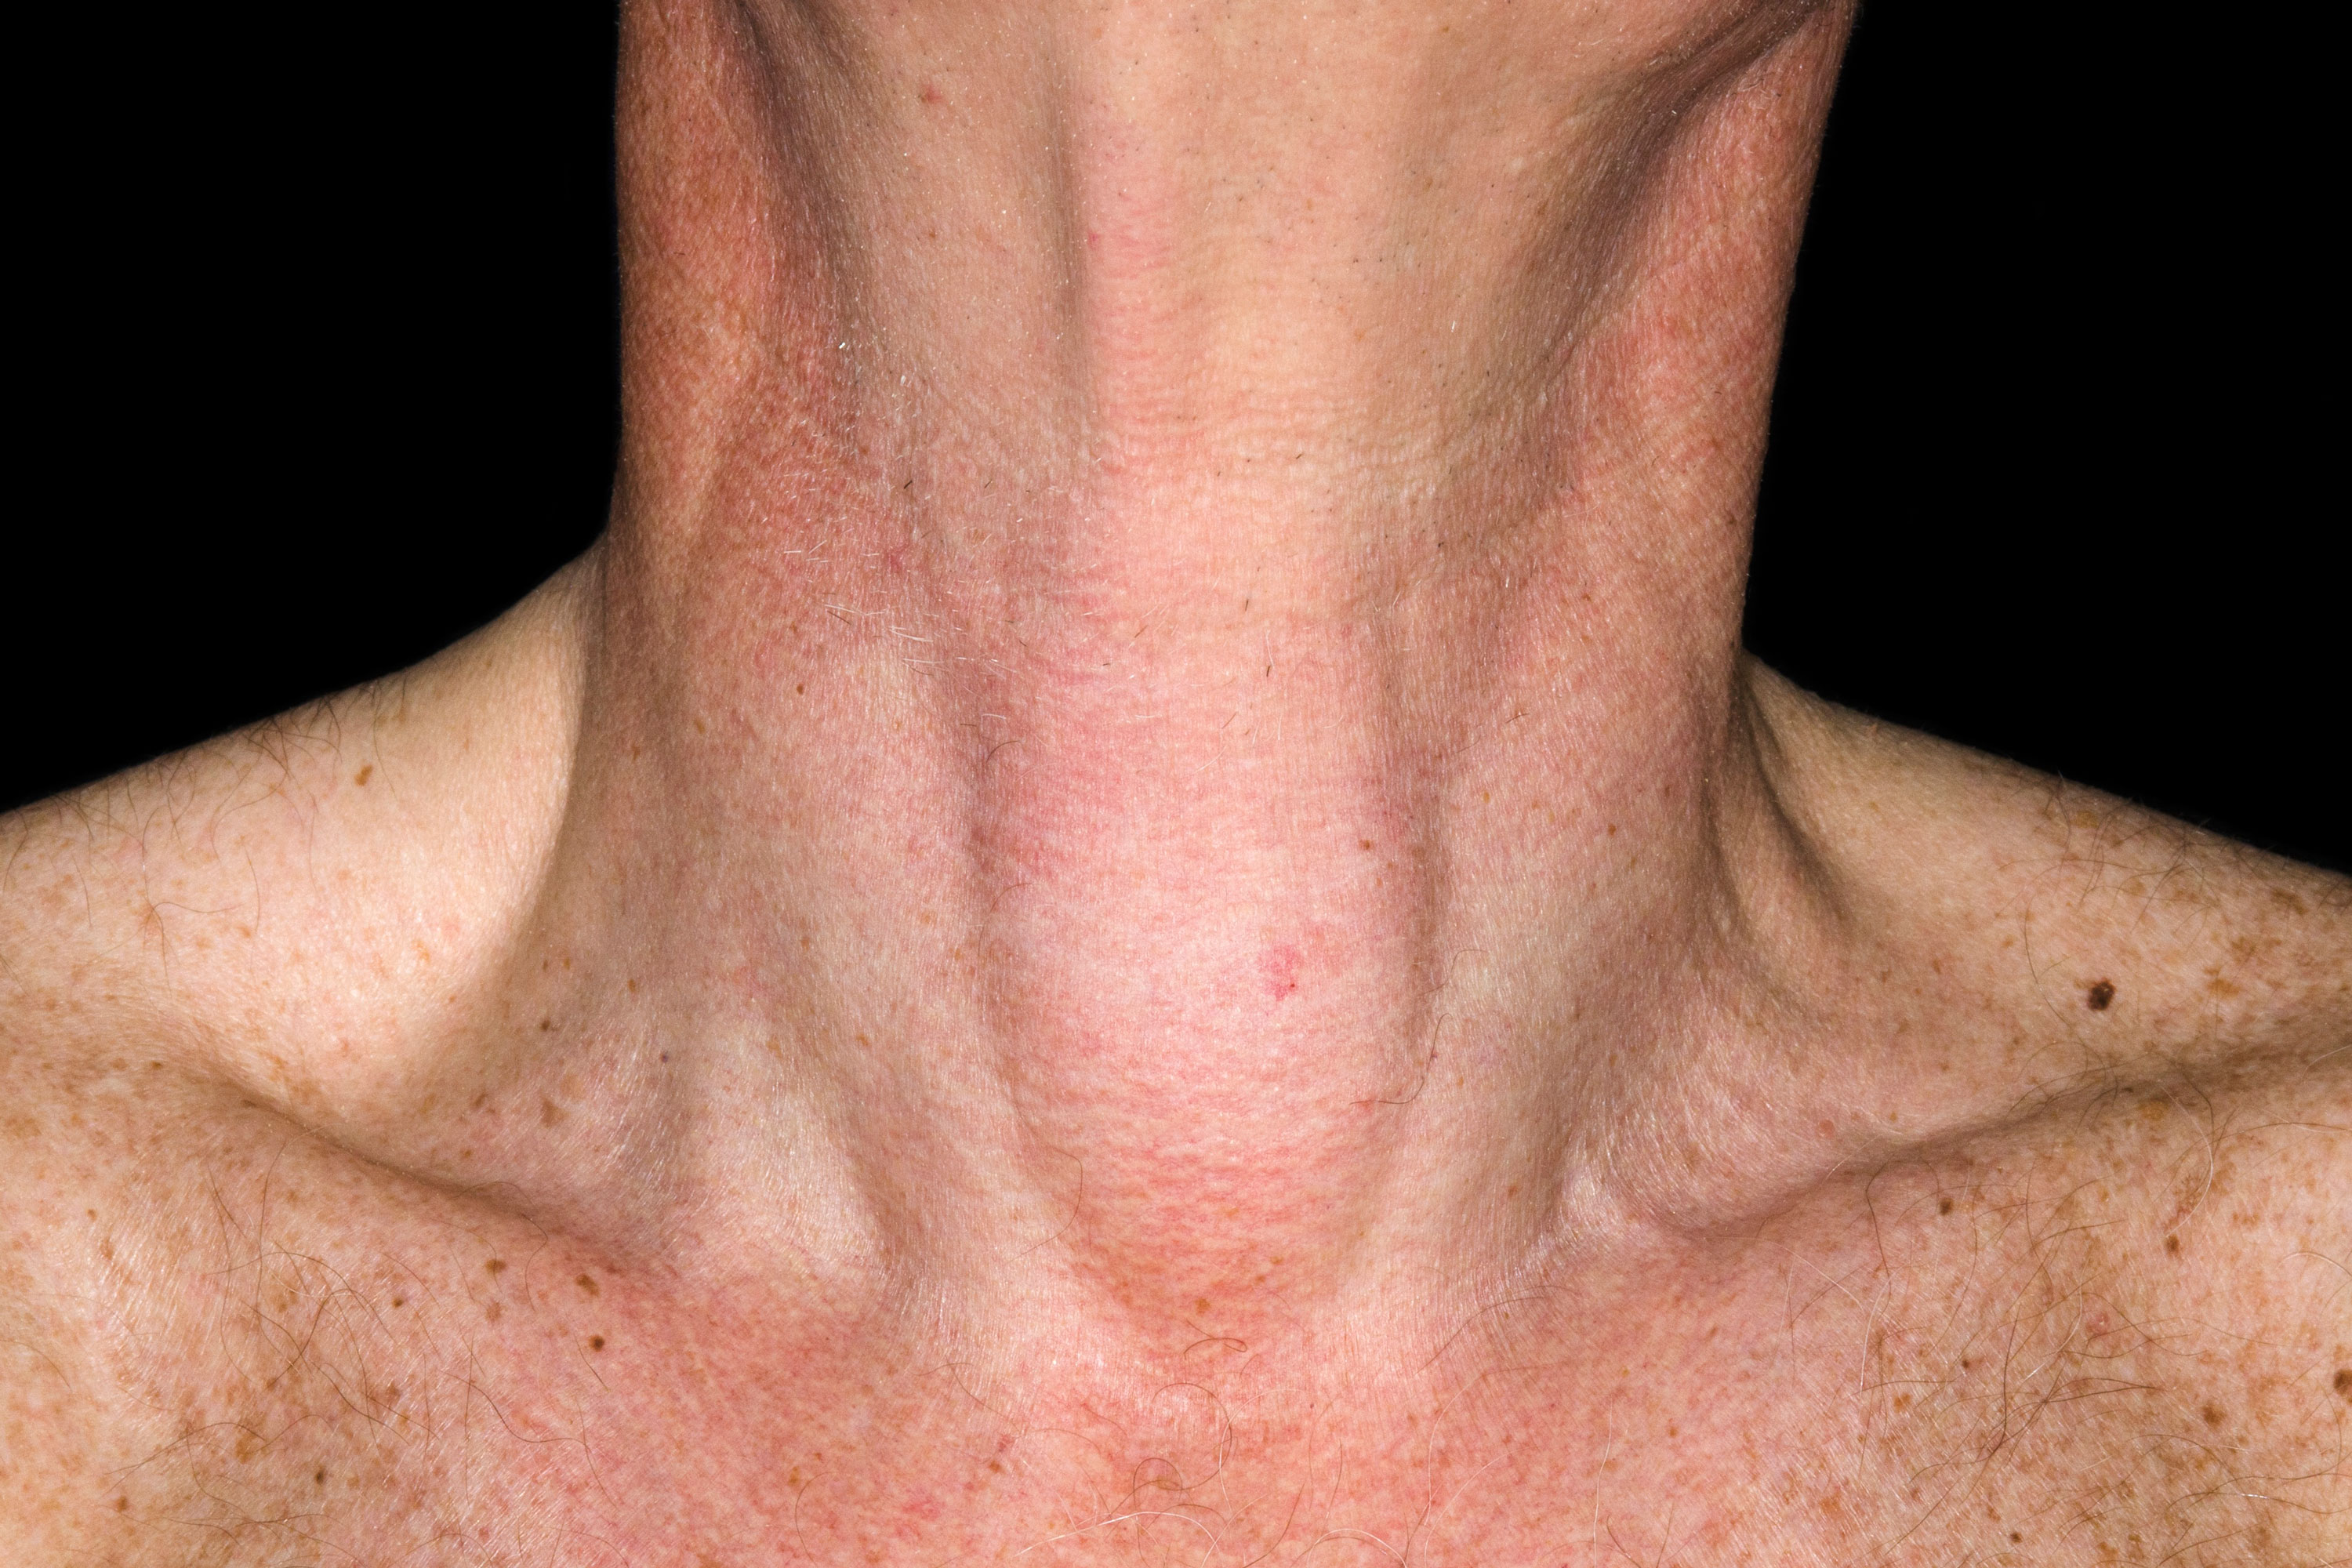 cystic nodule on the thyroid gland 3x2